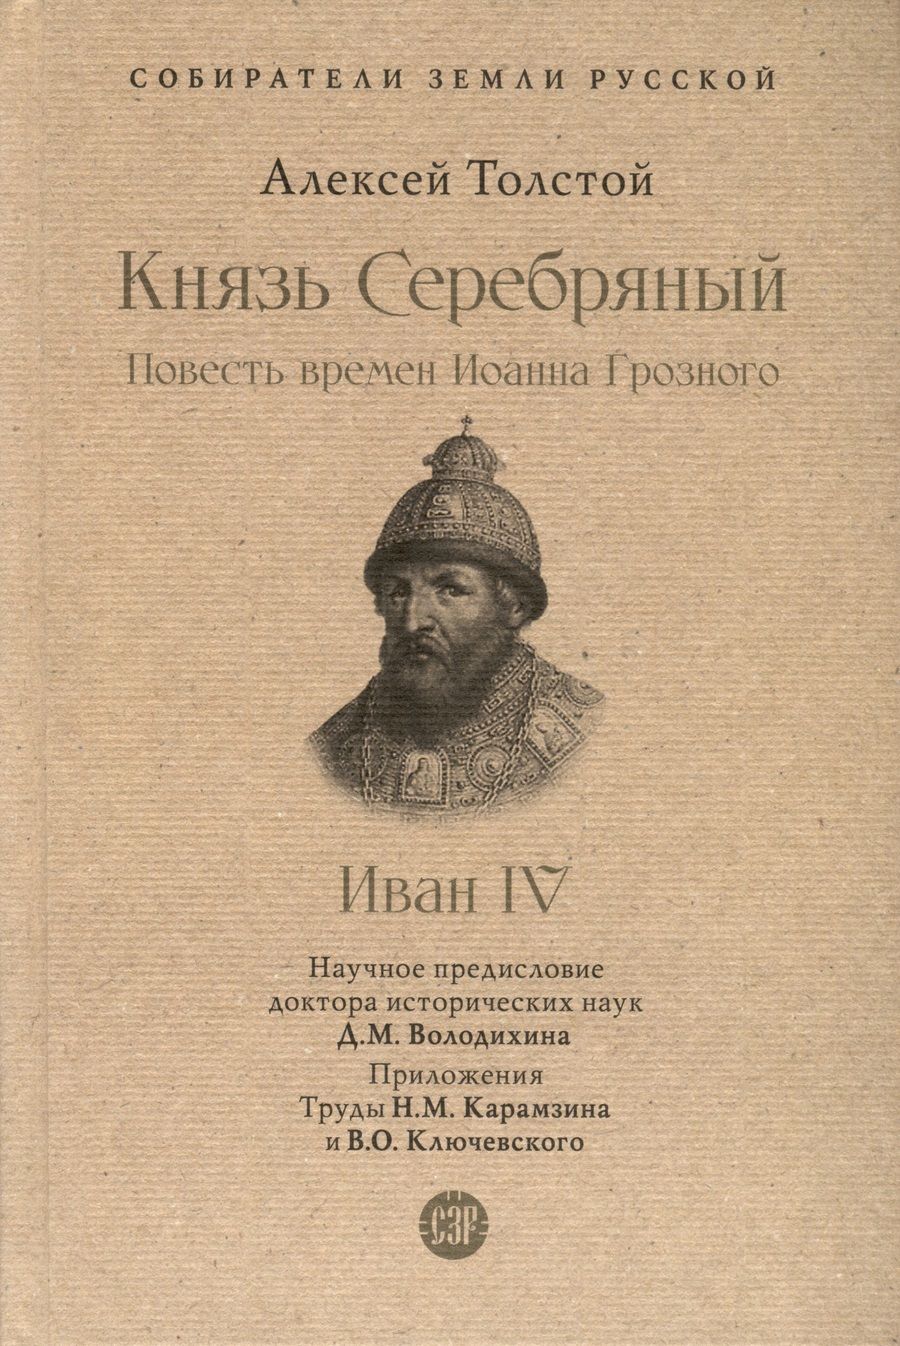 Обложка книги "Толстой: Князь Серебряный. Повесть времен Иоанна Грозного"